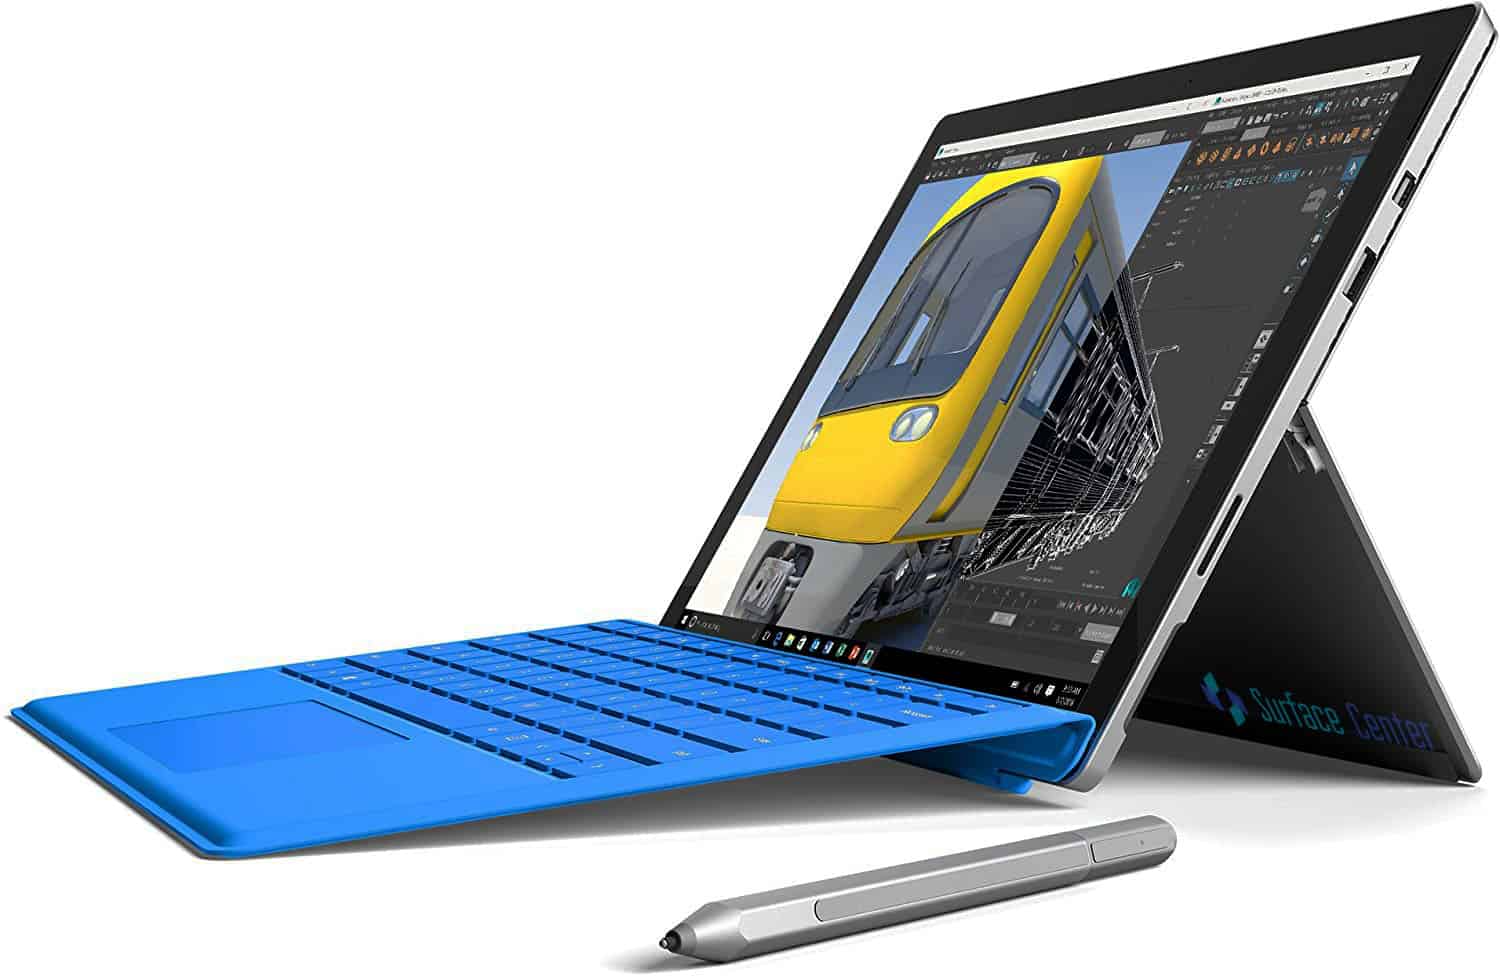 Đánh giá Surface Pro 4 có thể thực hiện các chương trình xử lý đồ họa hiện nay